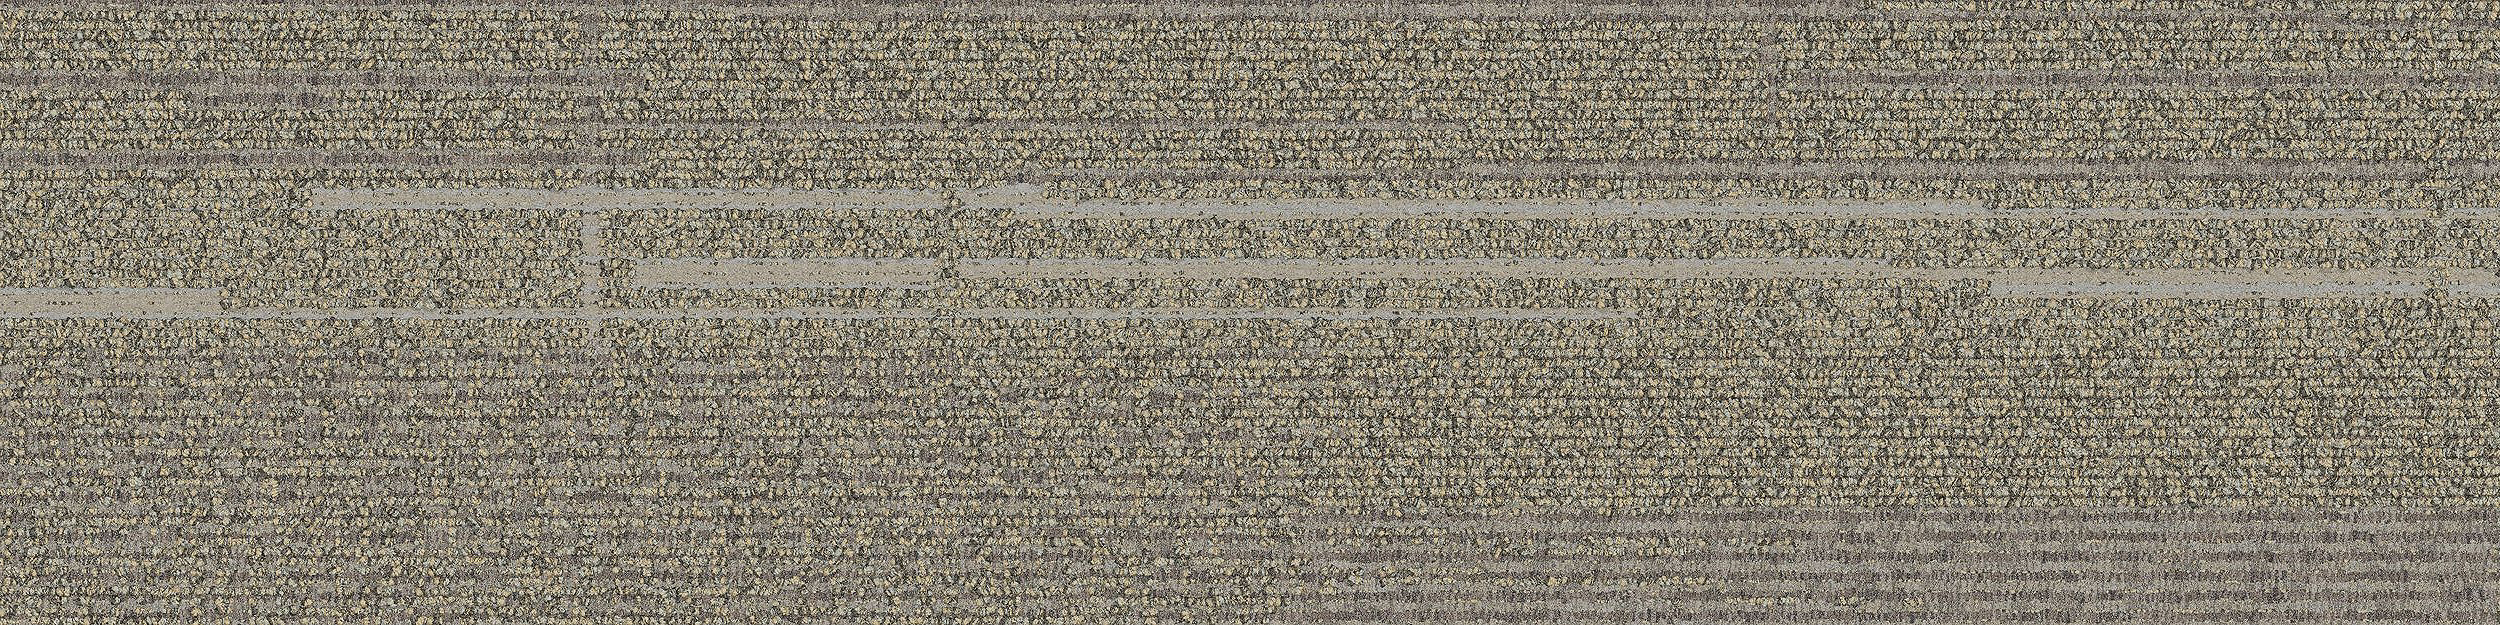 Trio Carpet Tile In Linen/Ash image number 7